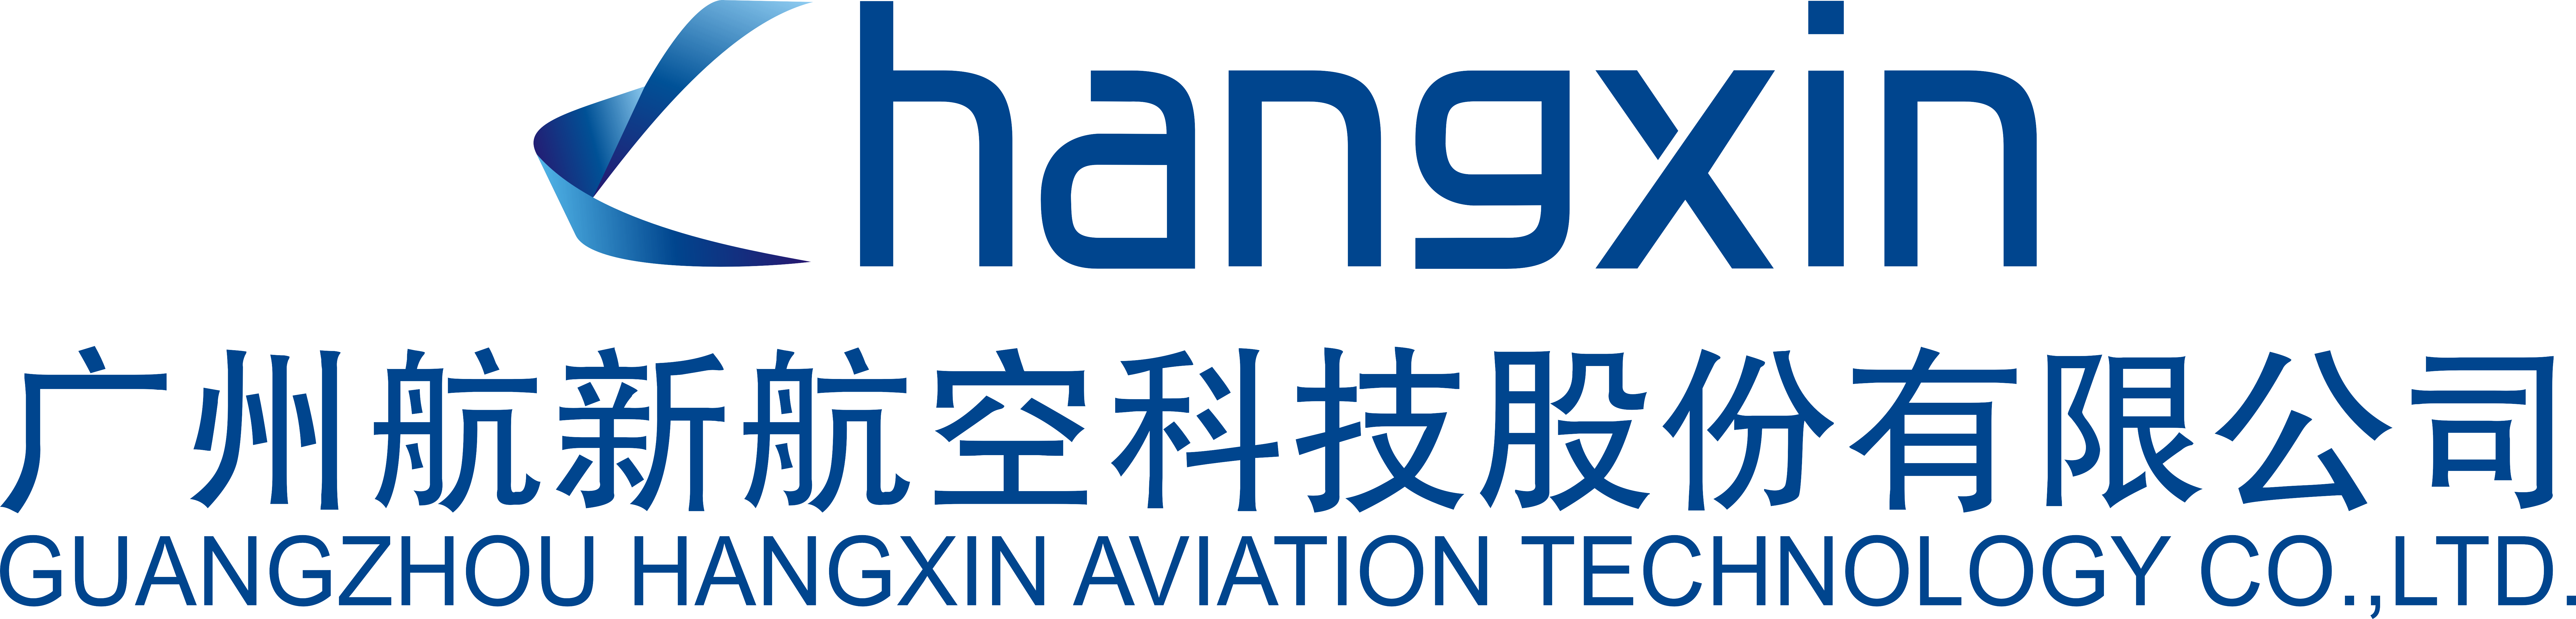 广州航新航空科技股份有限公司